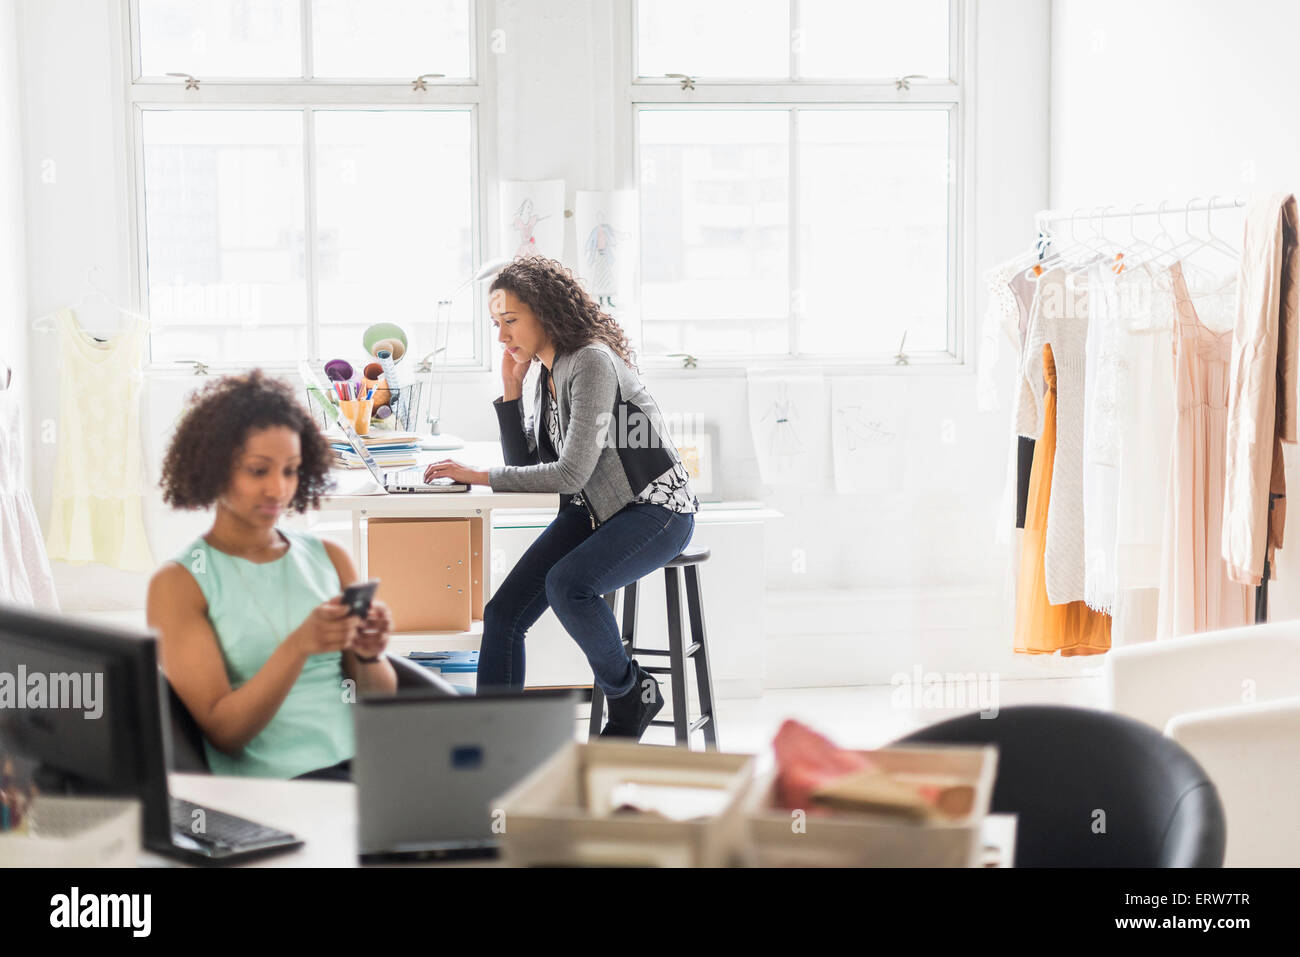 Businesswomen working at desks in office Stock Photo